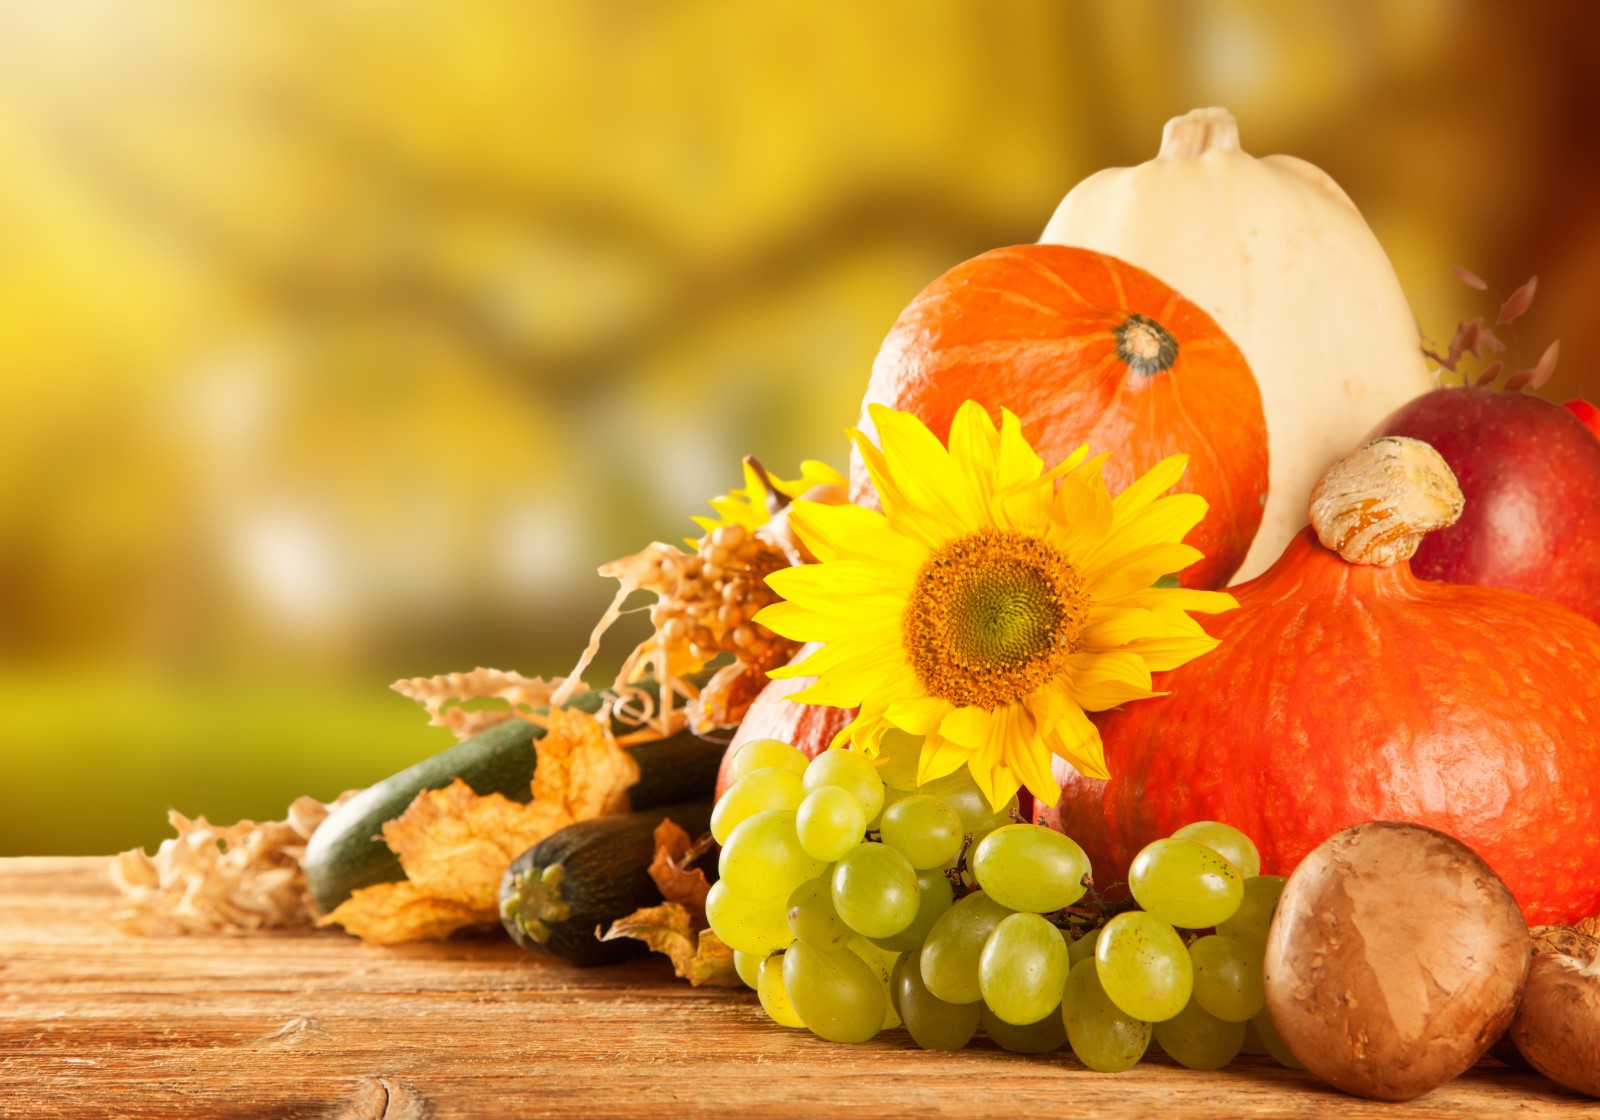 mùa thu, nấm, rau, táo, quả bí ngô, mùa gặt, trái cây, nho